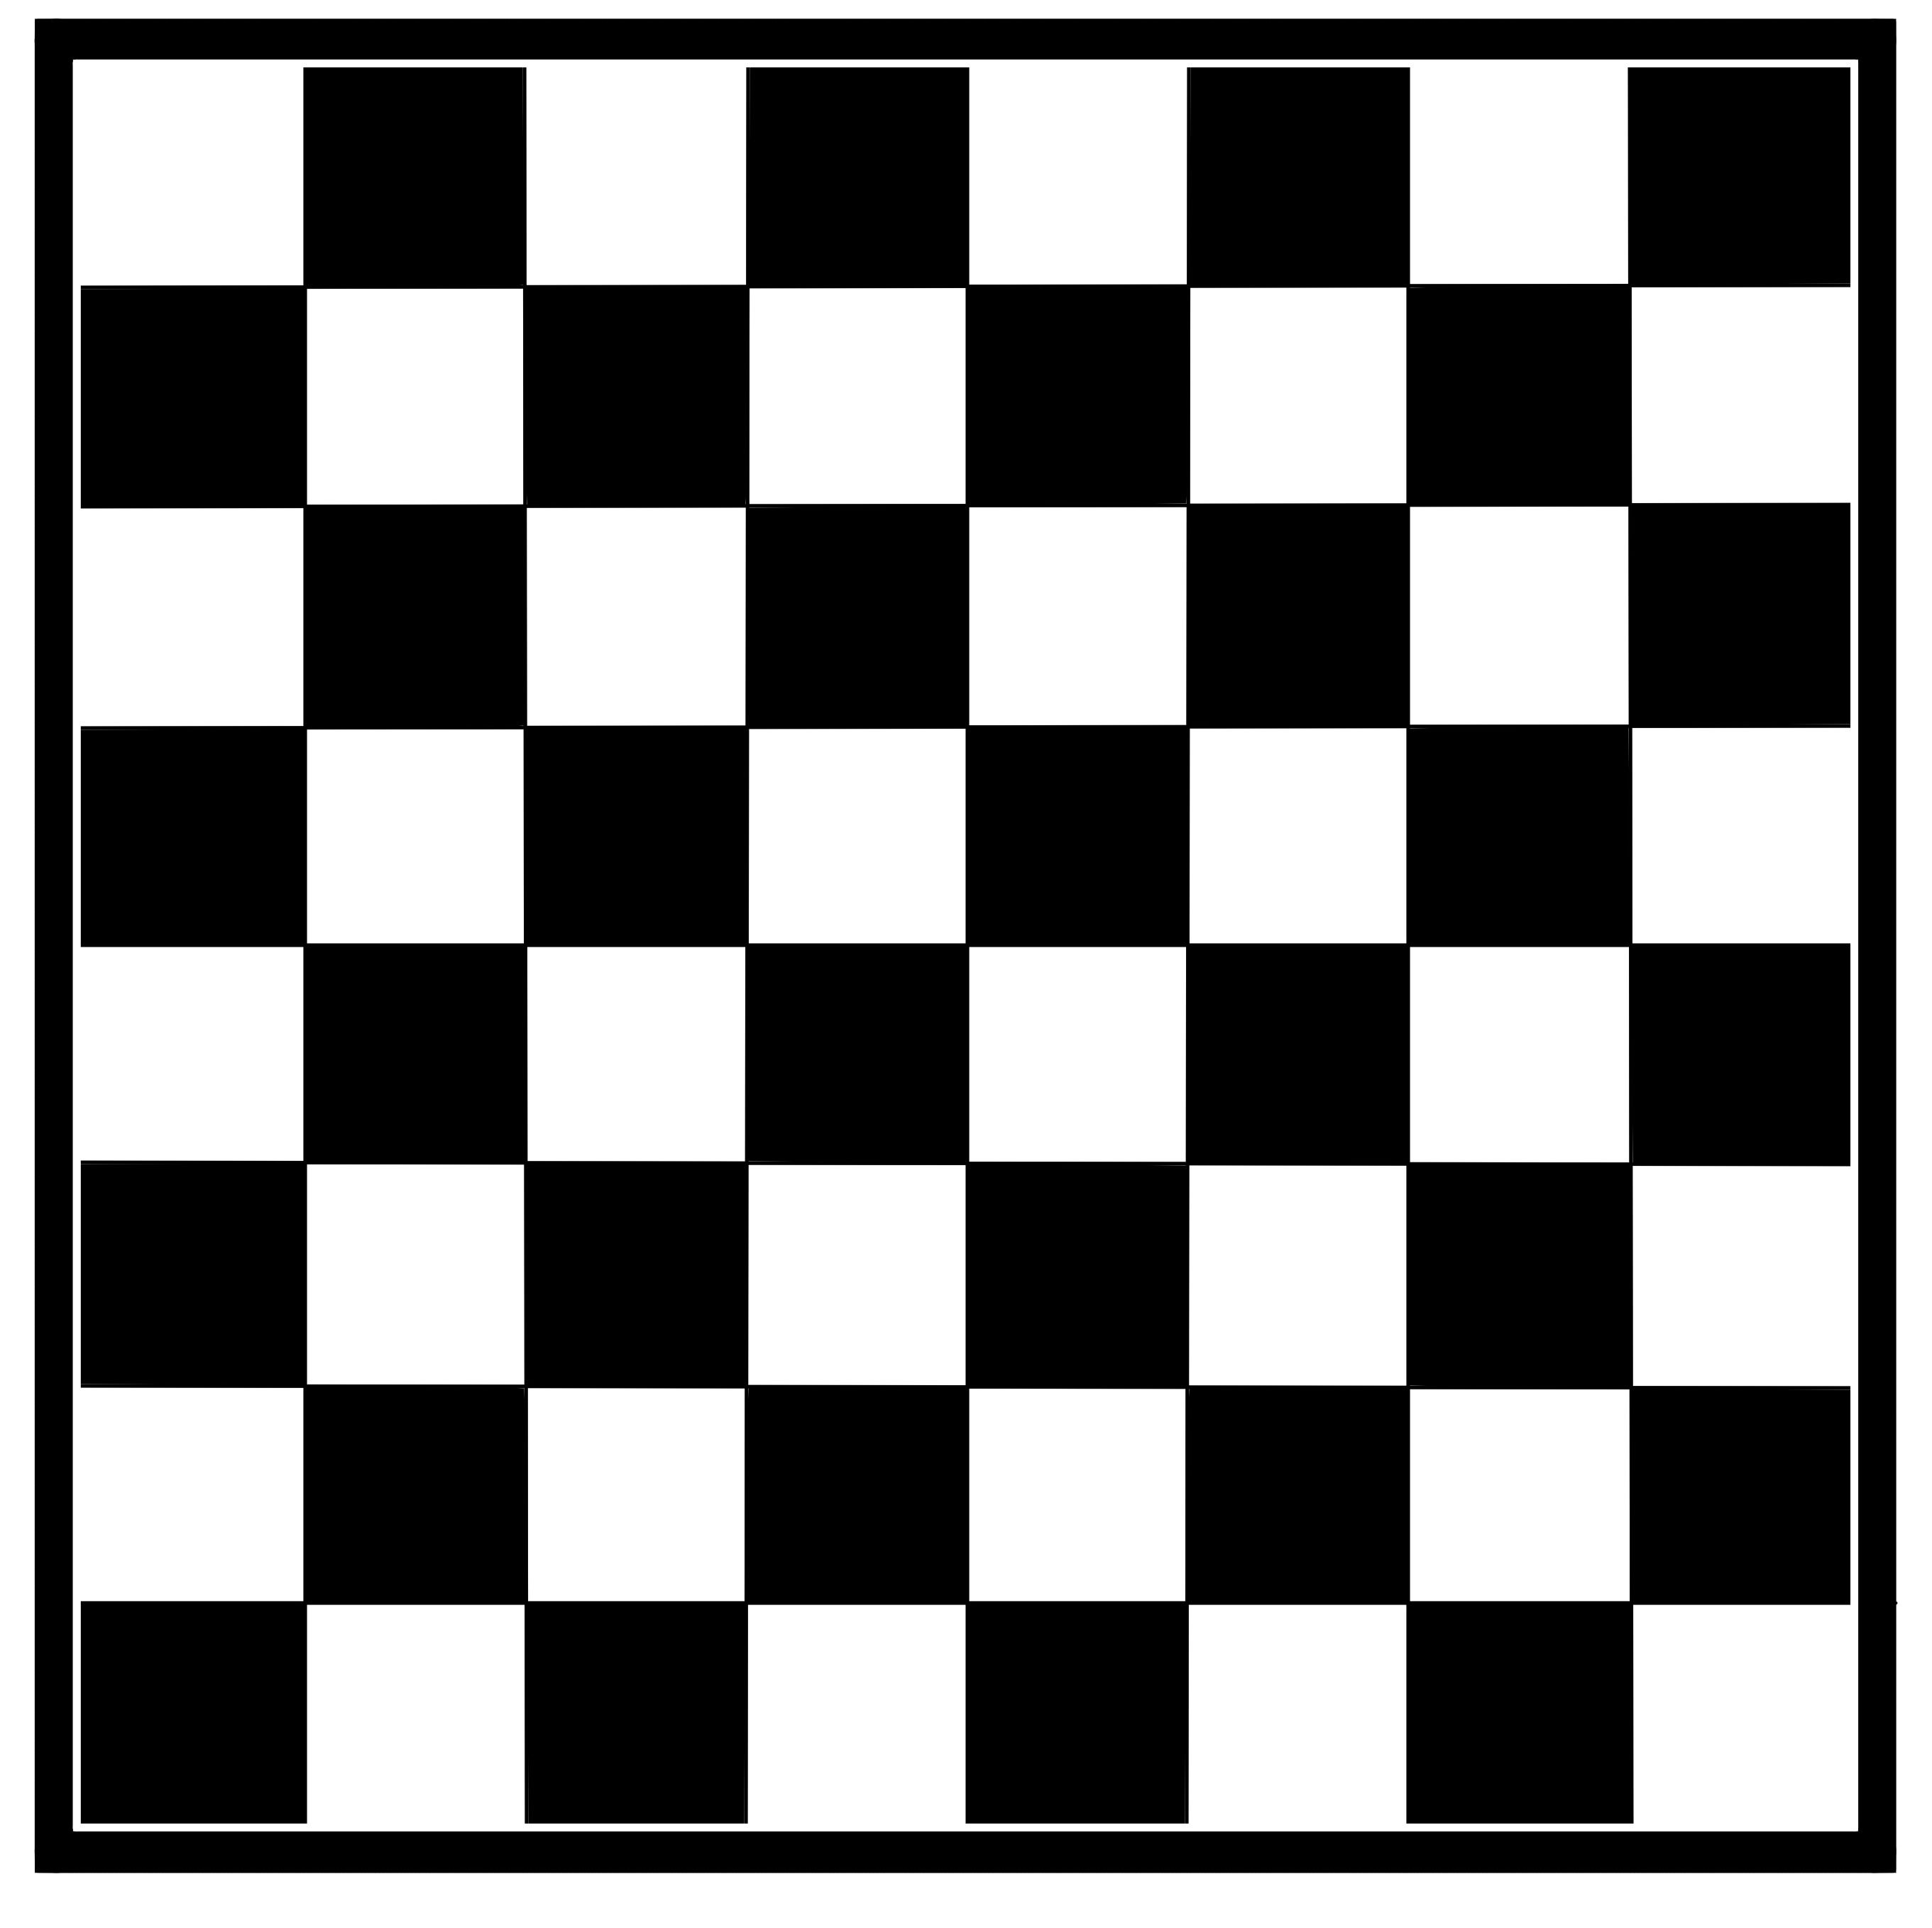 举报 国际象棋棋盘,黑白图像素材.